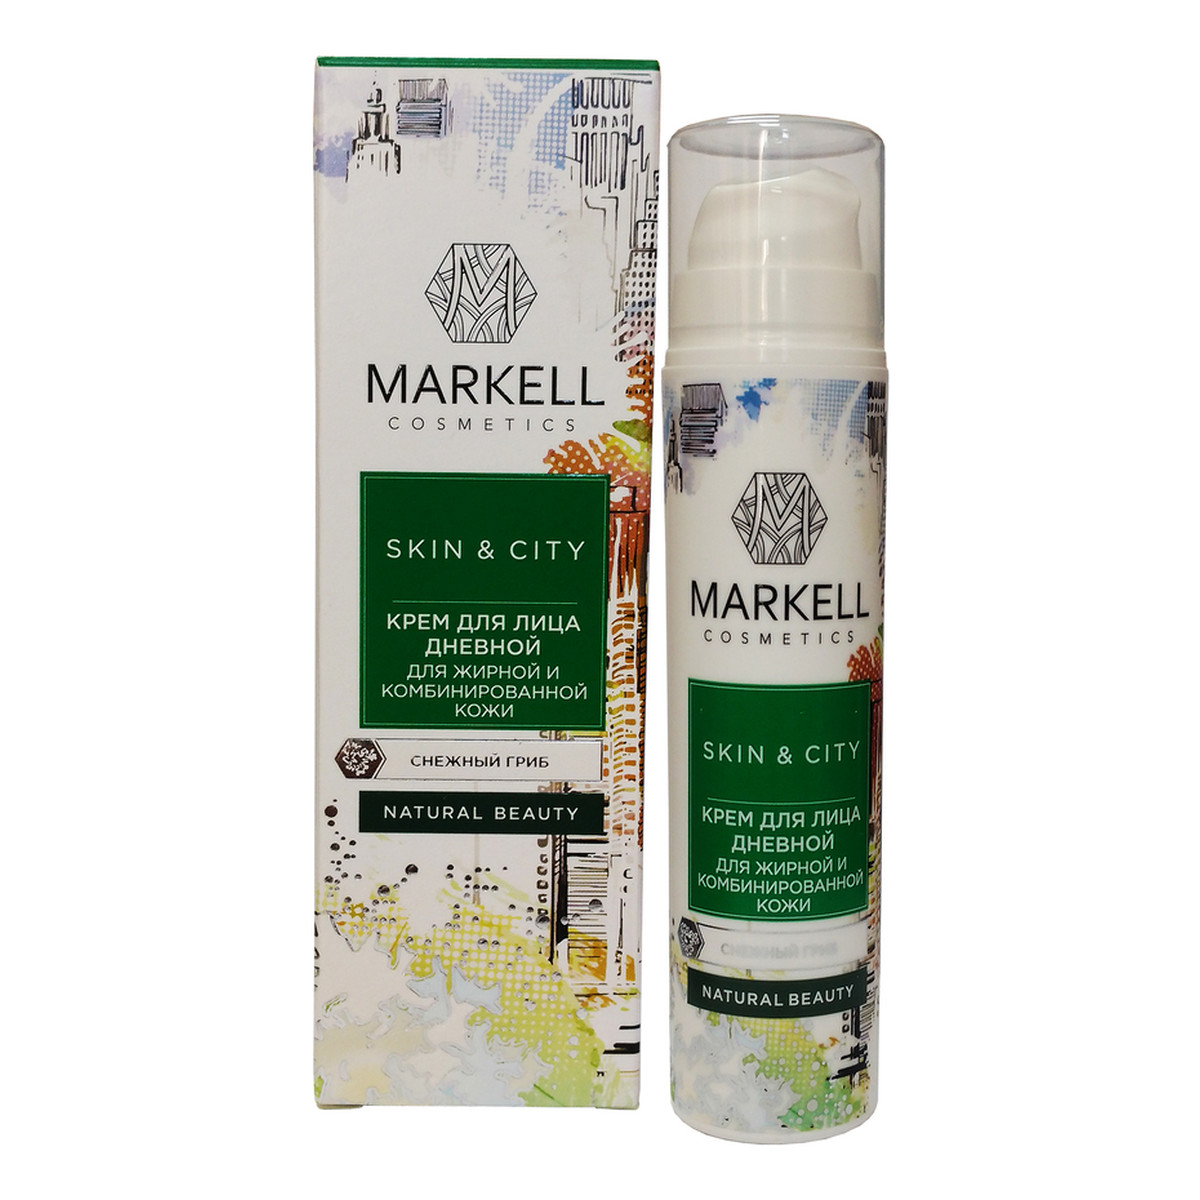 Markell Cosmetics Skin & City KREM DO TWARZY NA DZIEŃ CERA TŁUSTA I MIESZANA 50ml